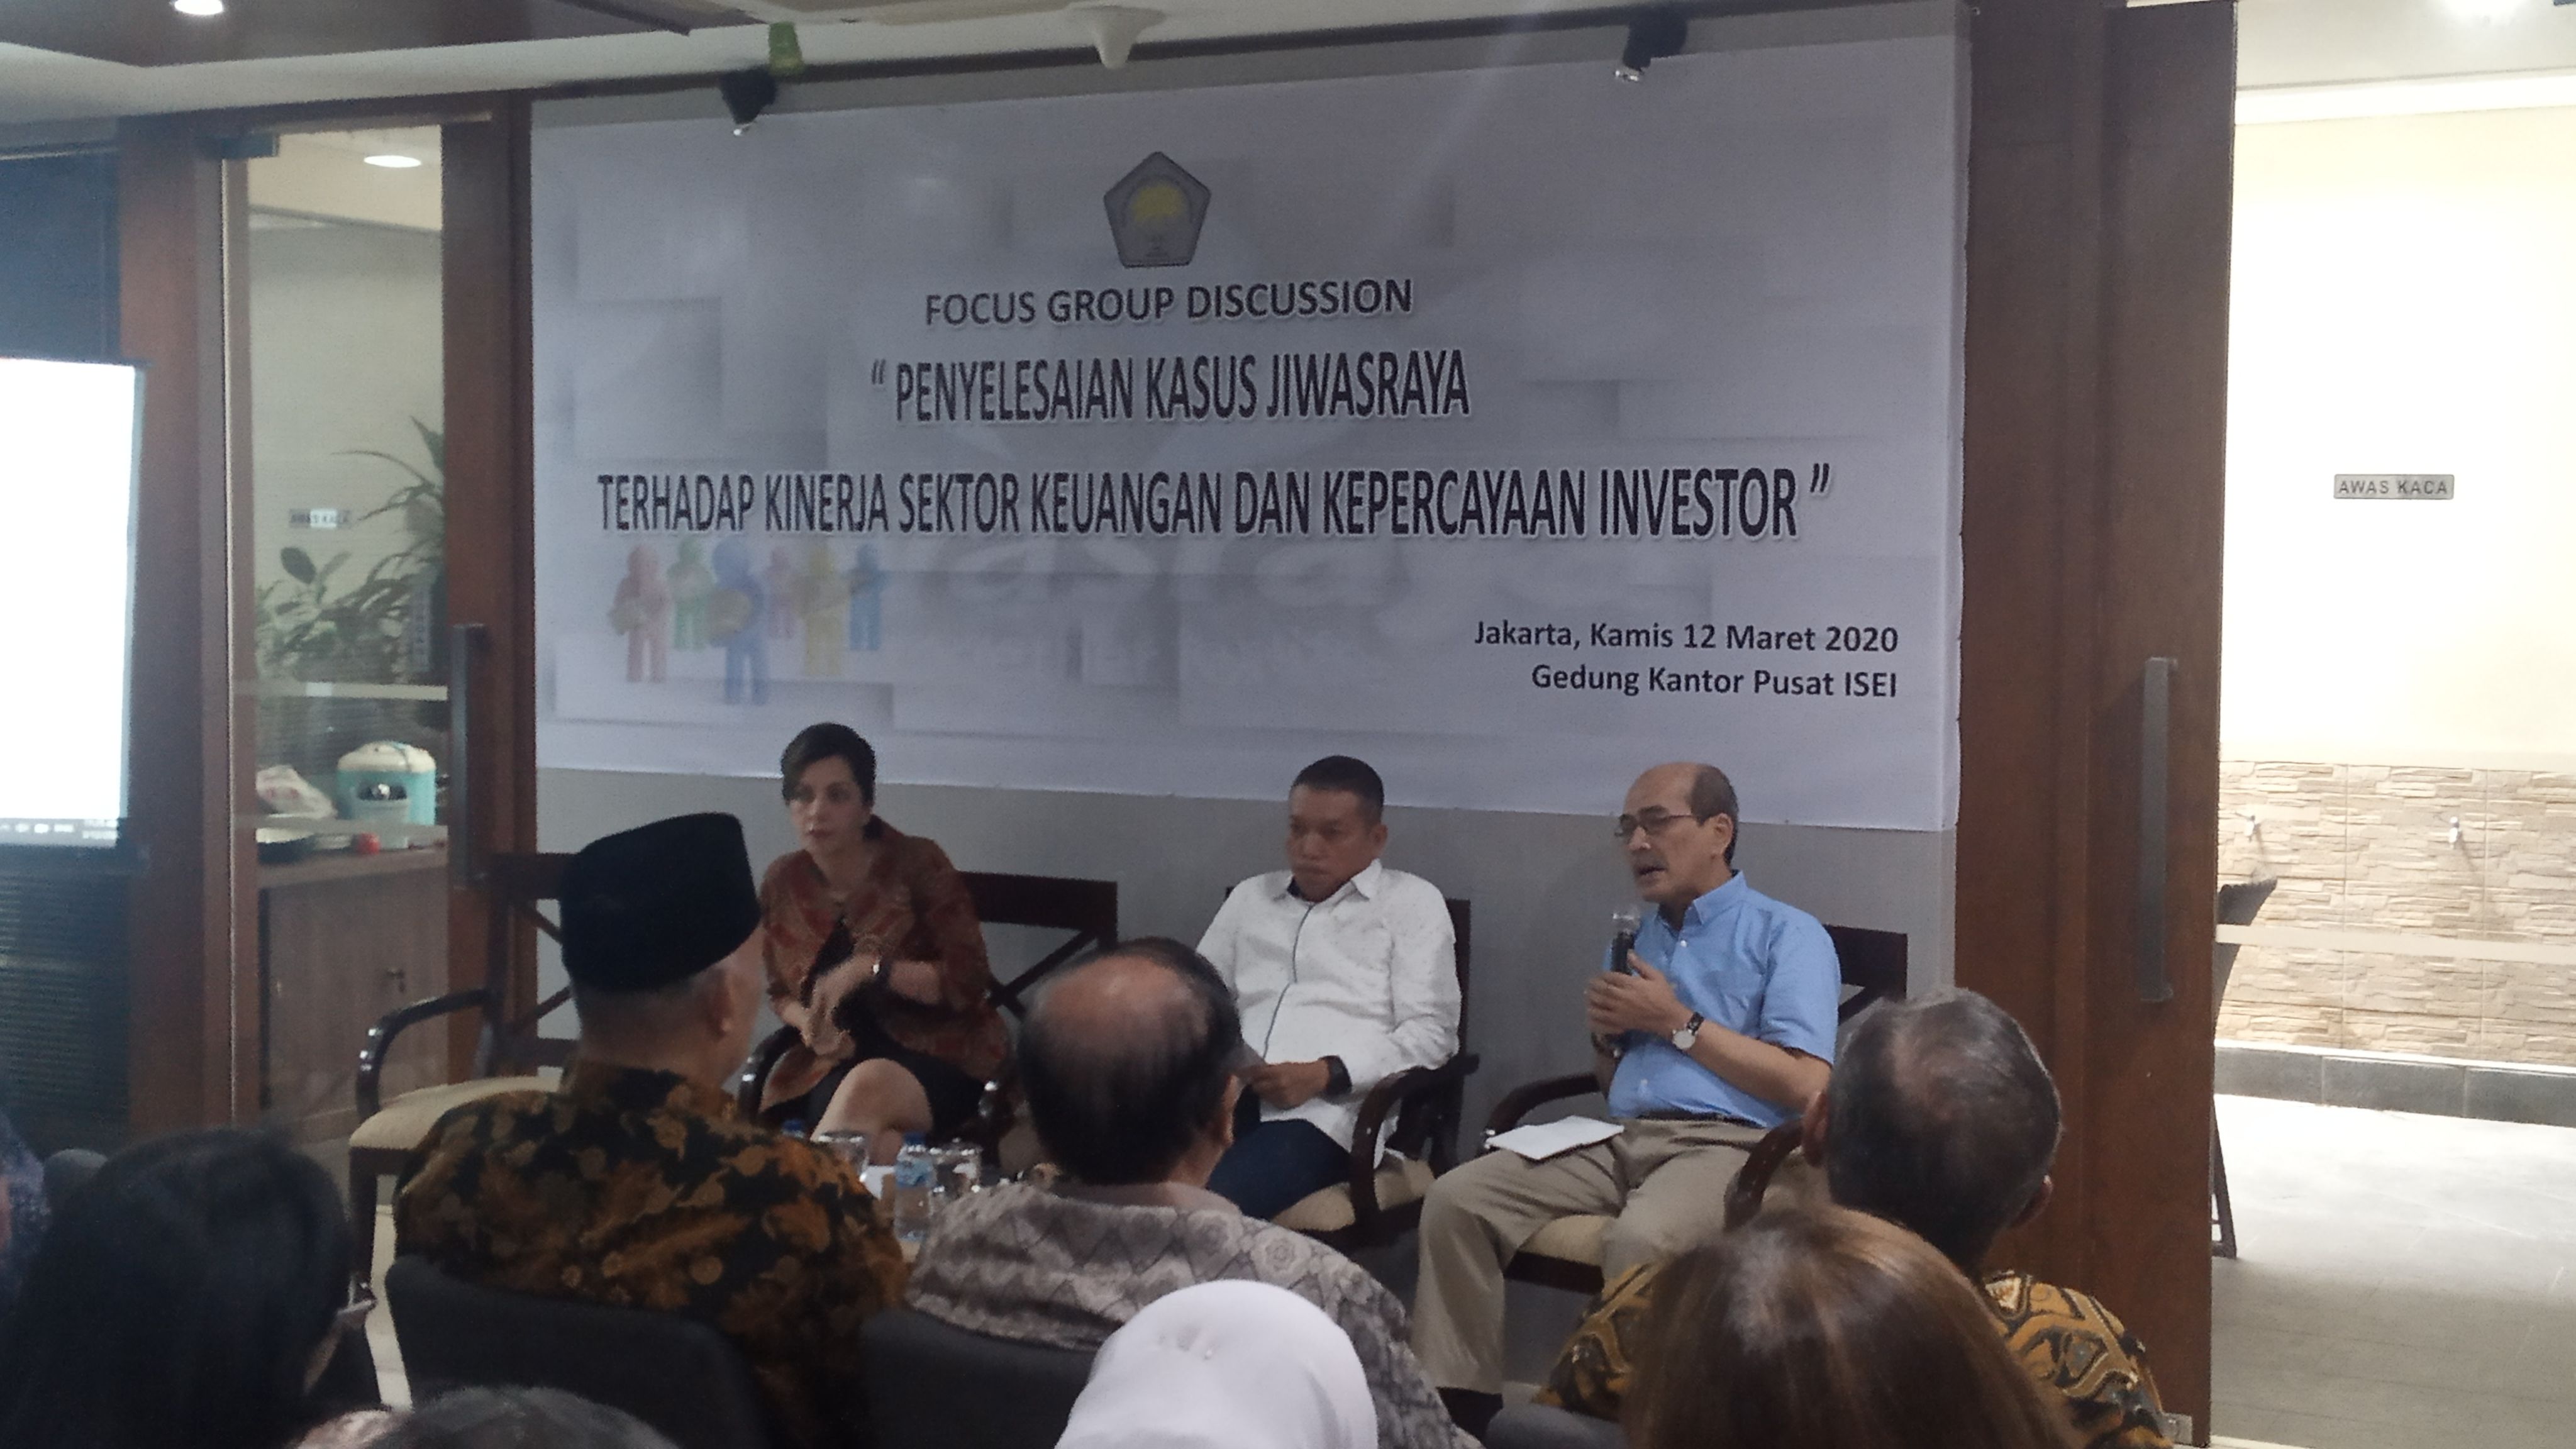 <p>Afifa, Sekretaris Jenderal Asosiasi Manajer Investasi Indonesia (AMII) dalam Focus Group Discussion (FGD) yang diselenggarakan oleh Ikatan Sarjana Ekonomi Indonesia (ISEI) pada Kamis, 12 Maret 2020 (Sumber: TrenAsia)</p>
